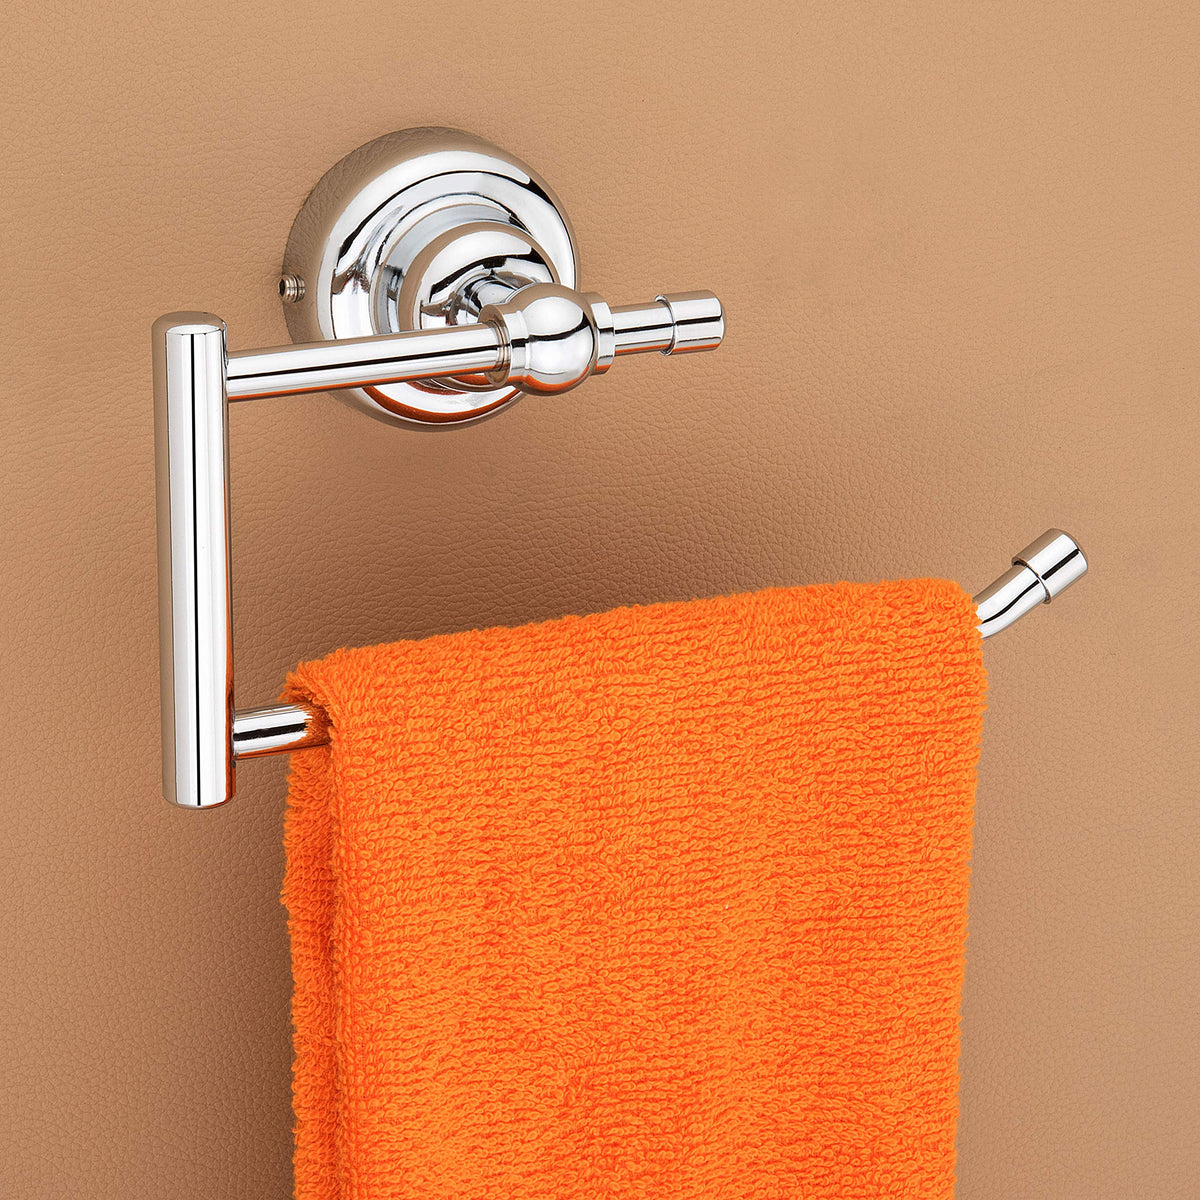 Plantex Stainless Steel 304 Grade Skyllo Napkin Ring/Towel Ring/Napkin Holder/Towel Hanger/Bathroom Accessories(Chrome) - Pack of 1